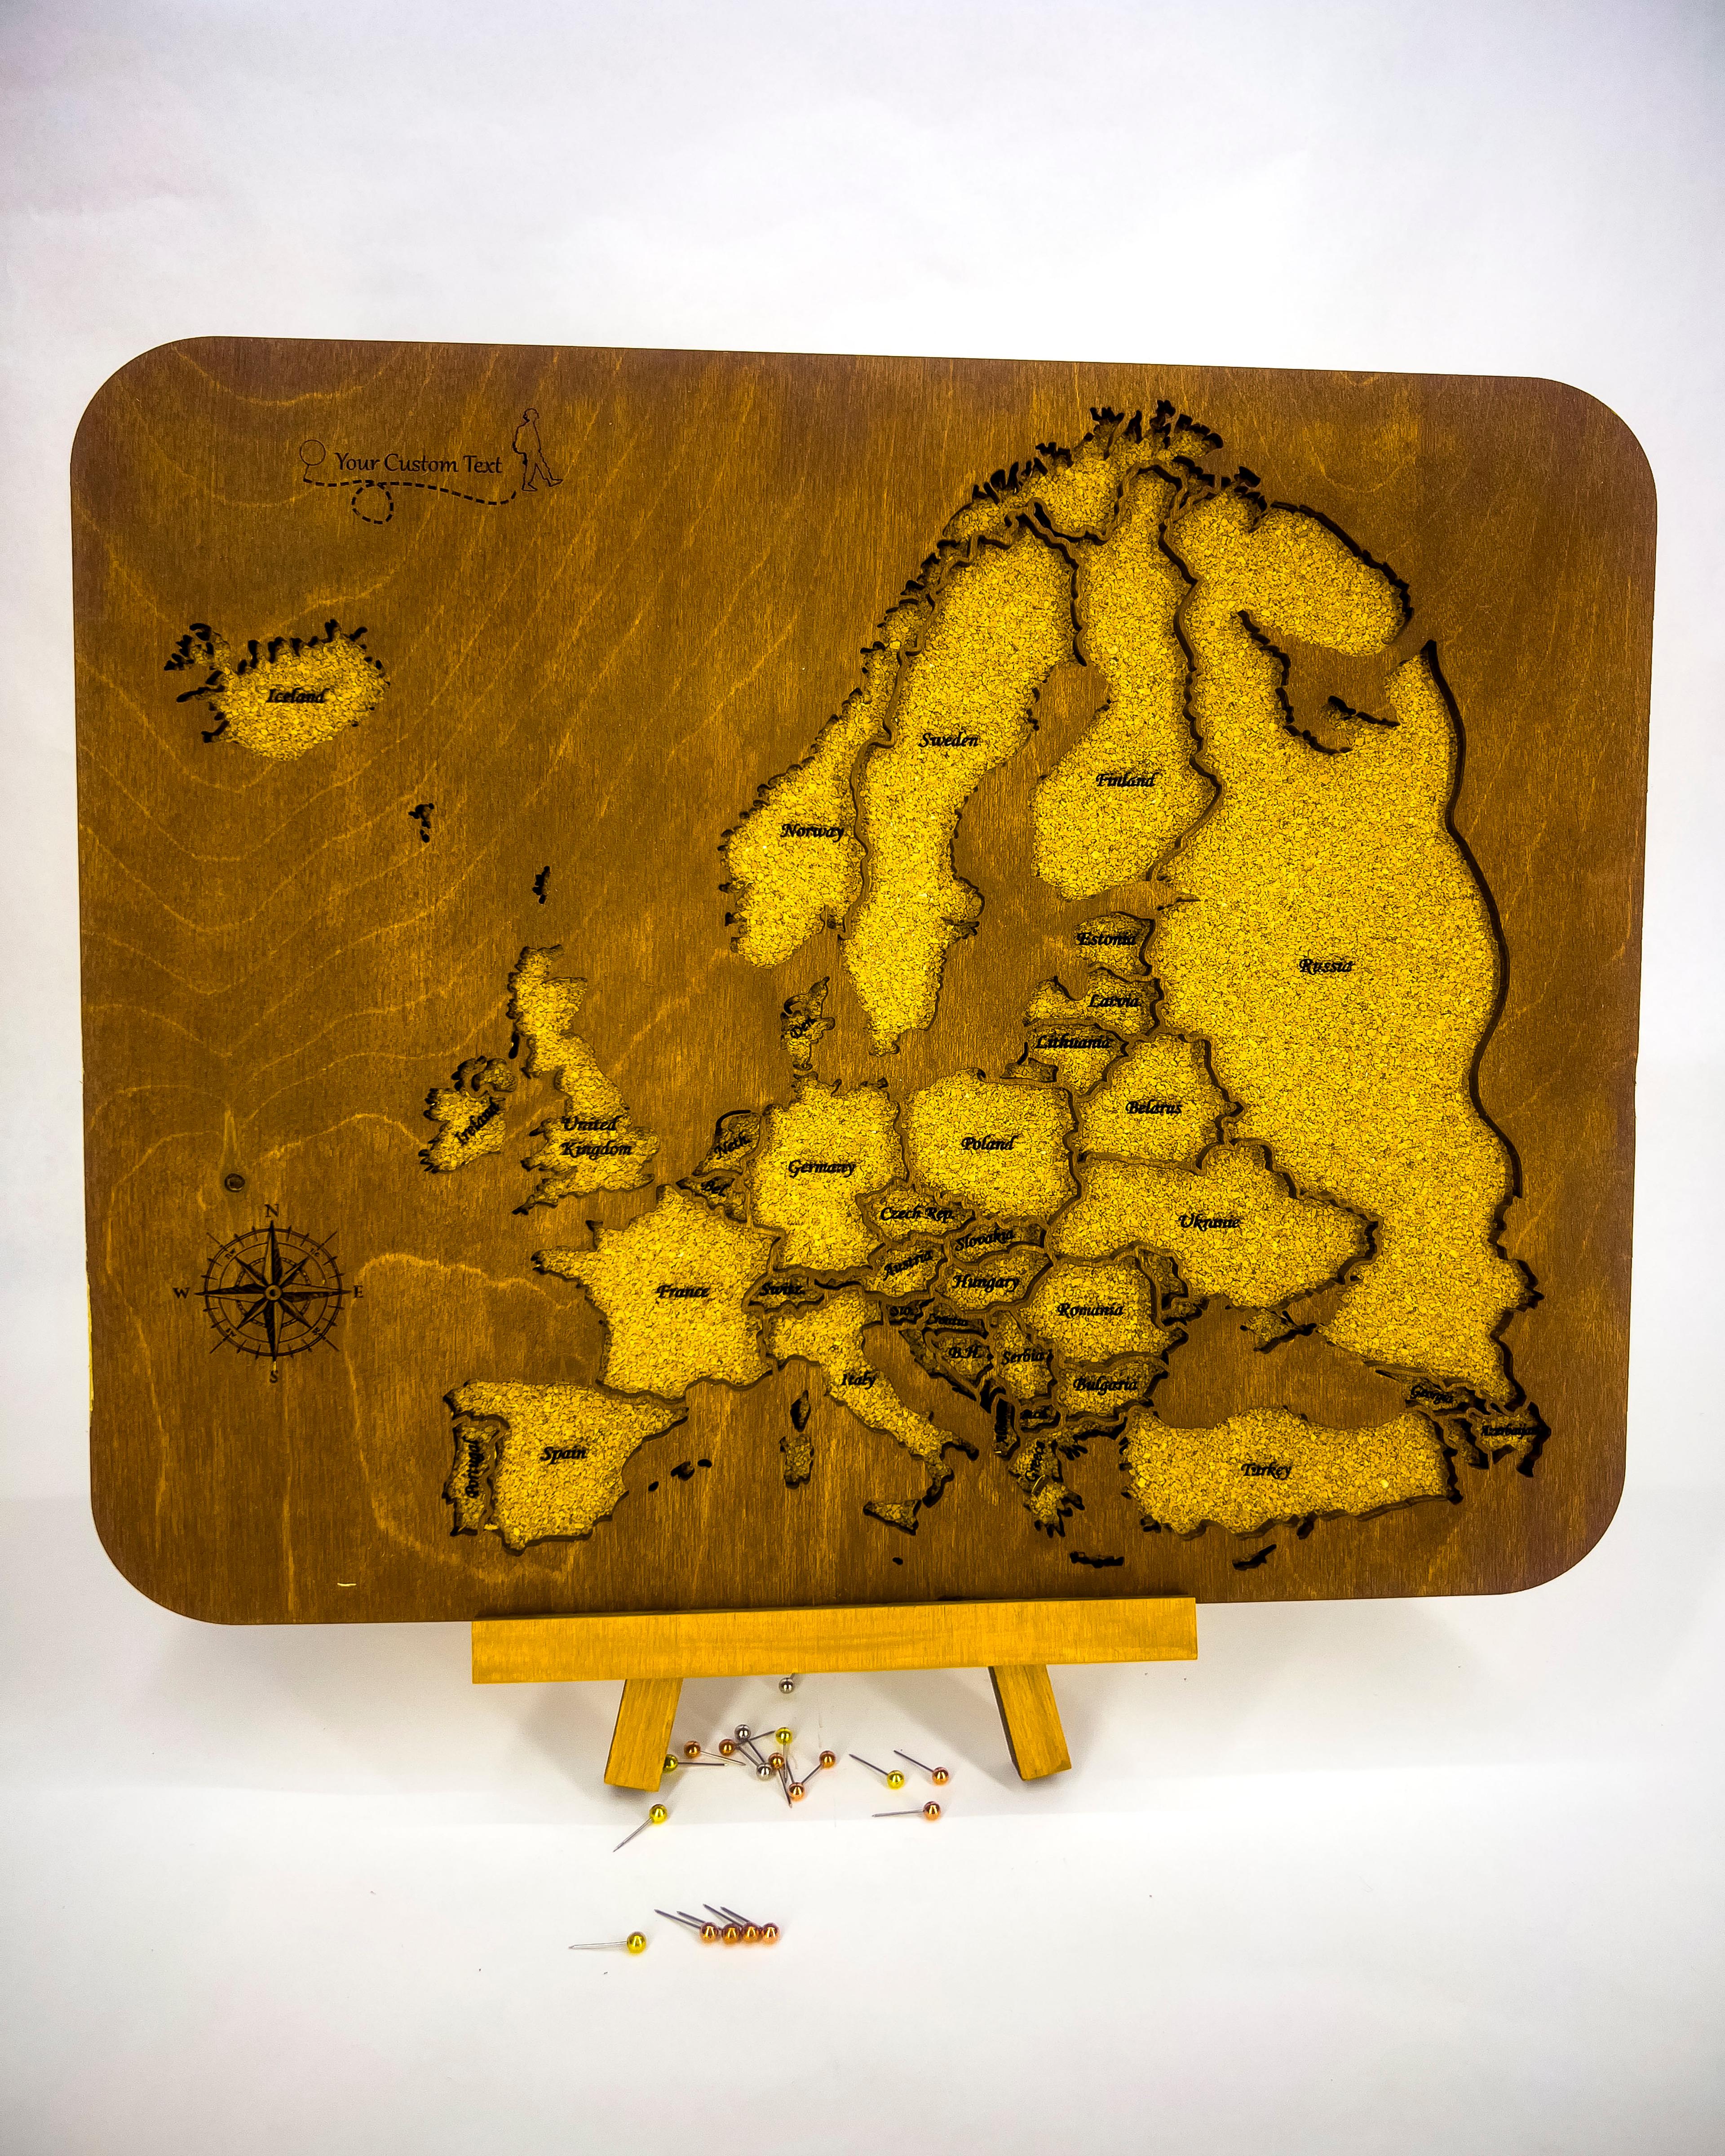 703 - Cork Board World Map (Pinable)